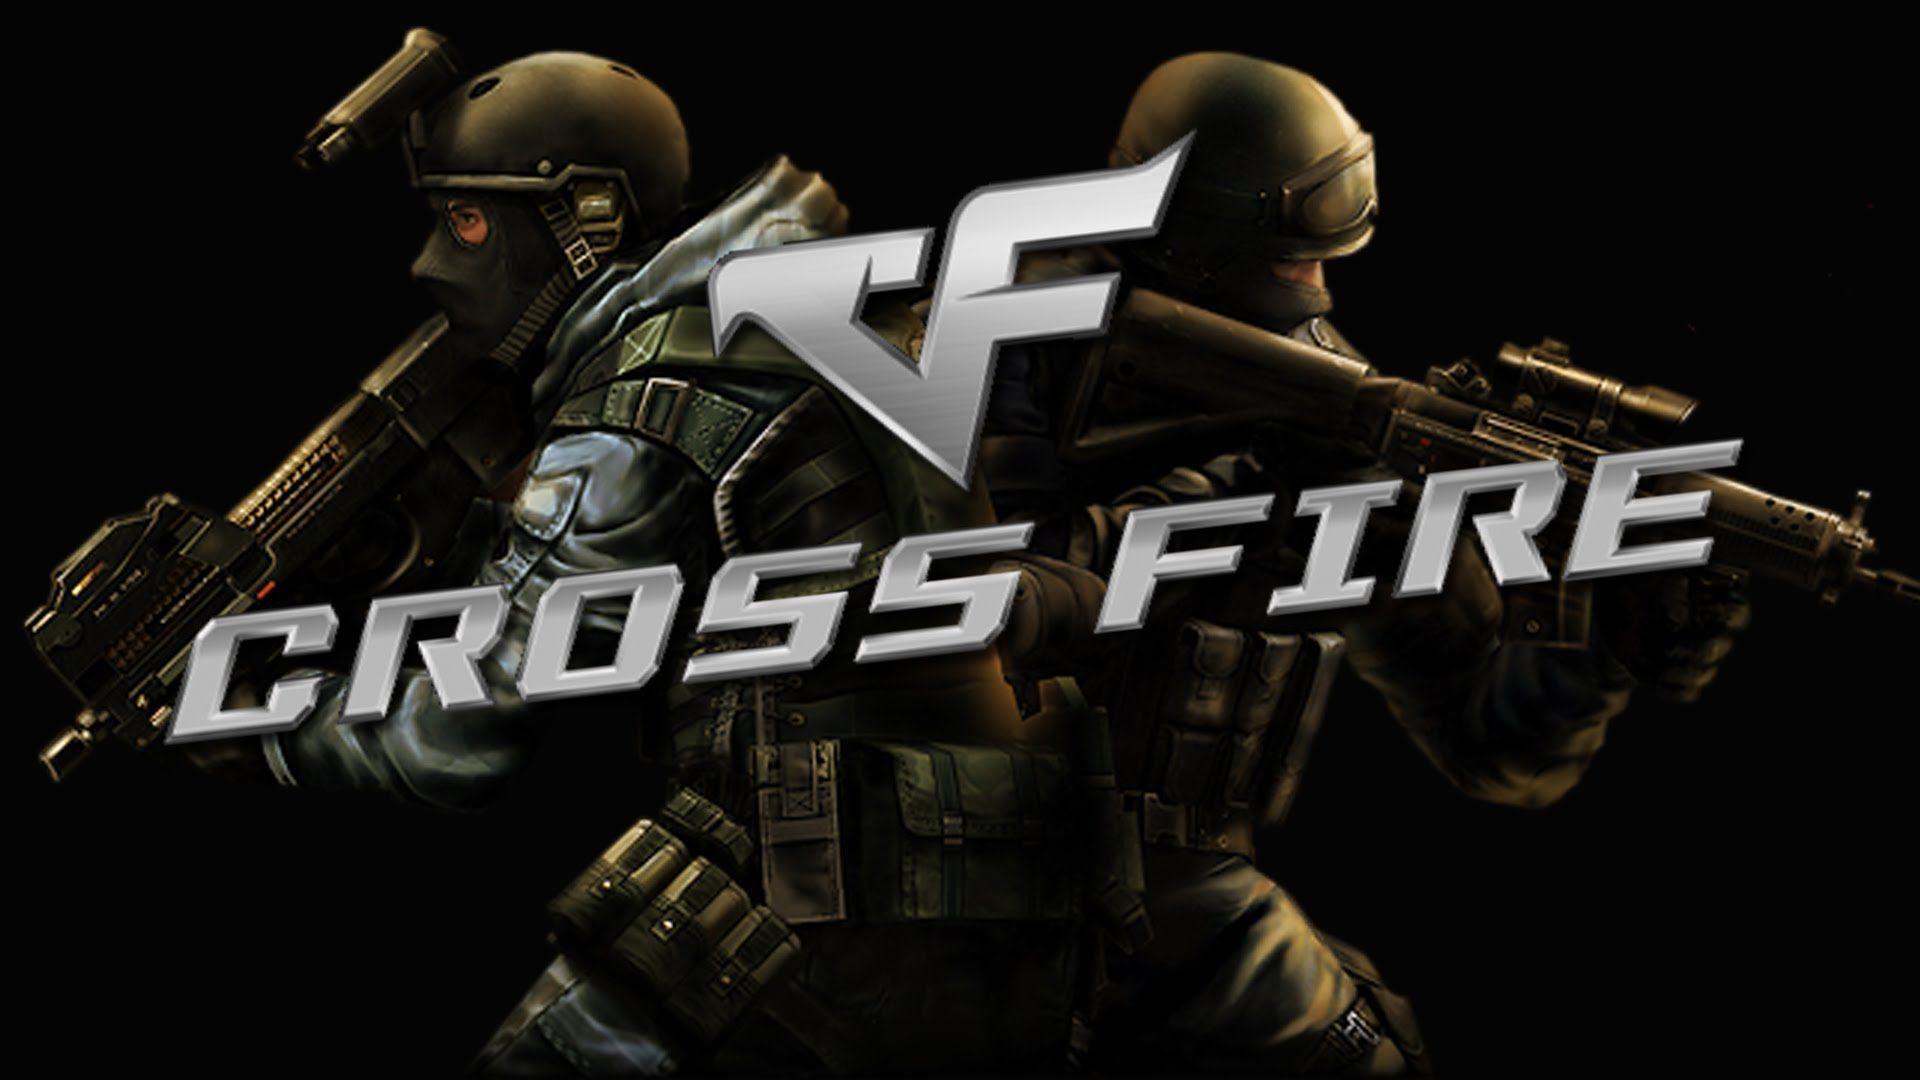 CrossFire là một tựa game bắn súng đa nền tảng được yêu thích trên thế giới. Trò chơi này đòi hỏi người chơi phải sắm cho mình những chiến thuật đúng đắn để giành chiến thắng. Hãy xem hình ảnh này để thưởng thức một trong những trò chơi hấp dẫn nhất.